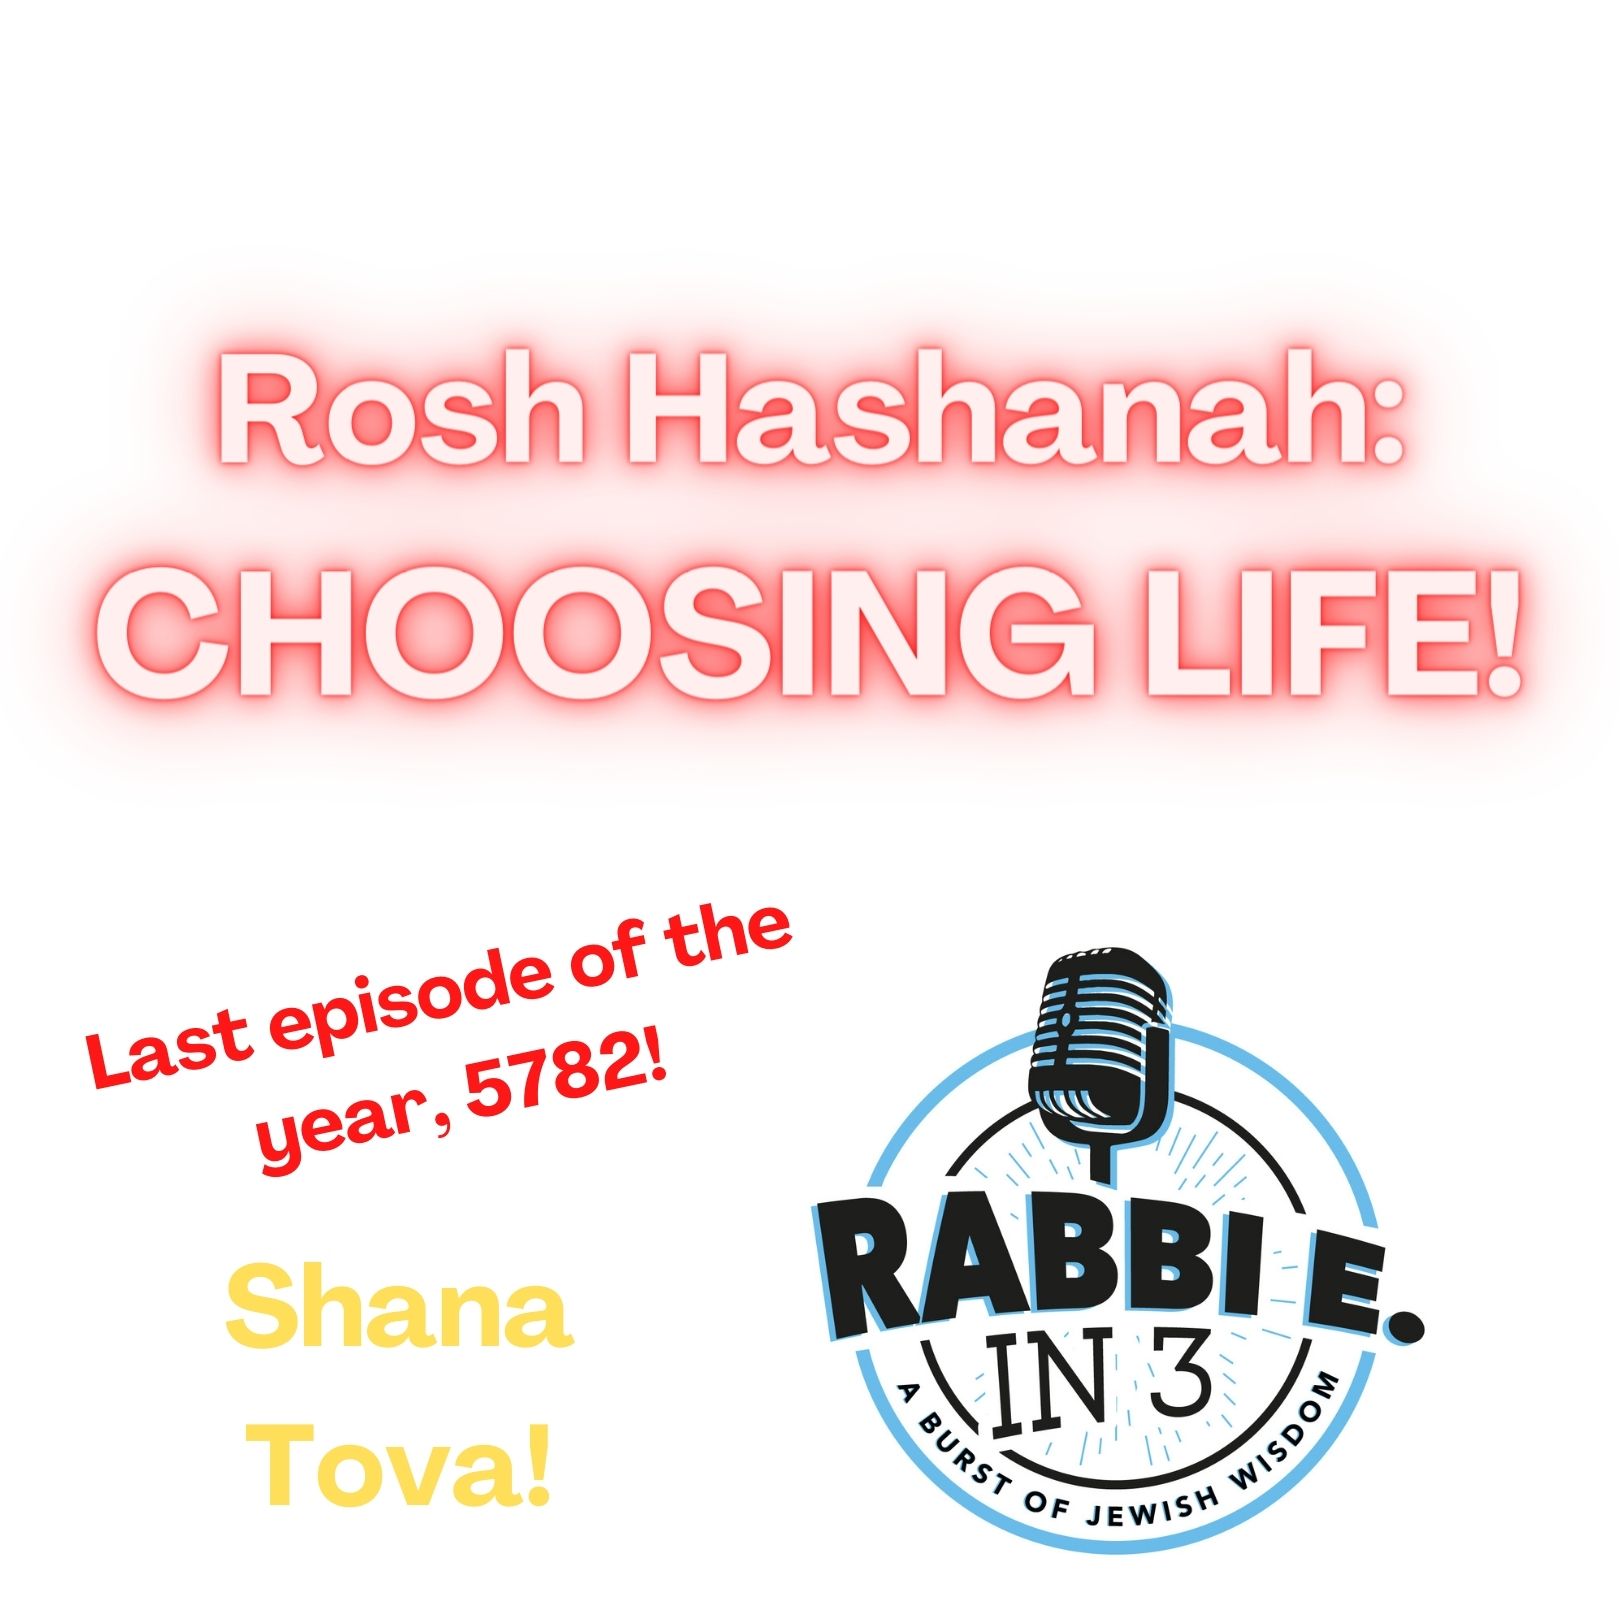 Rosh Hashanah: CHOOSING LIFE!